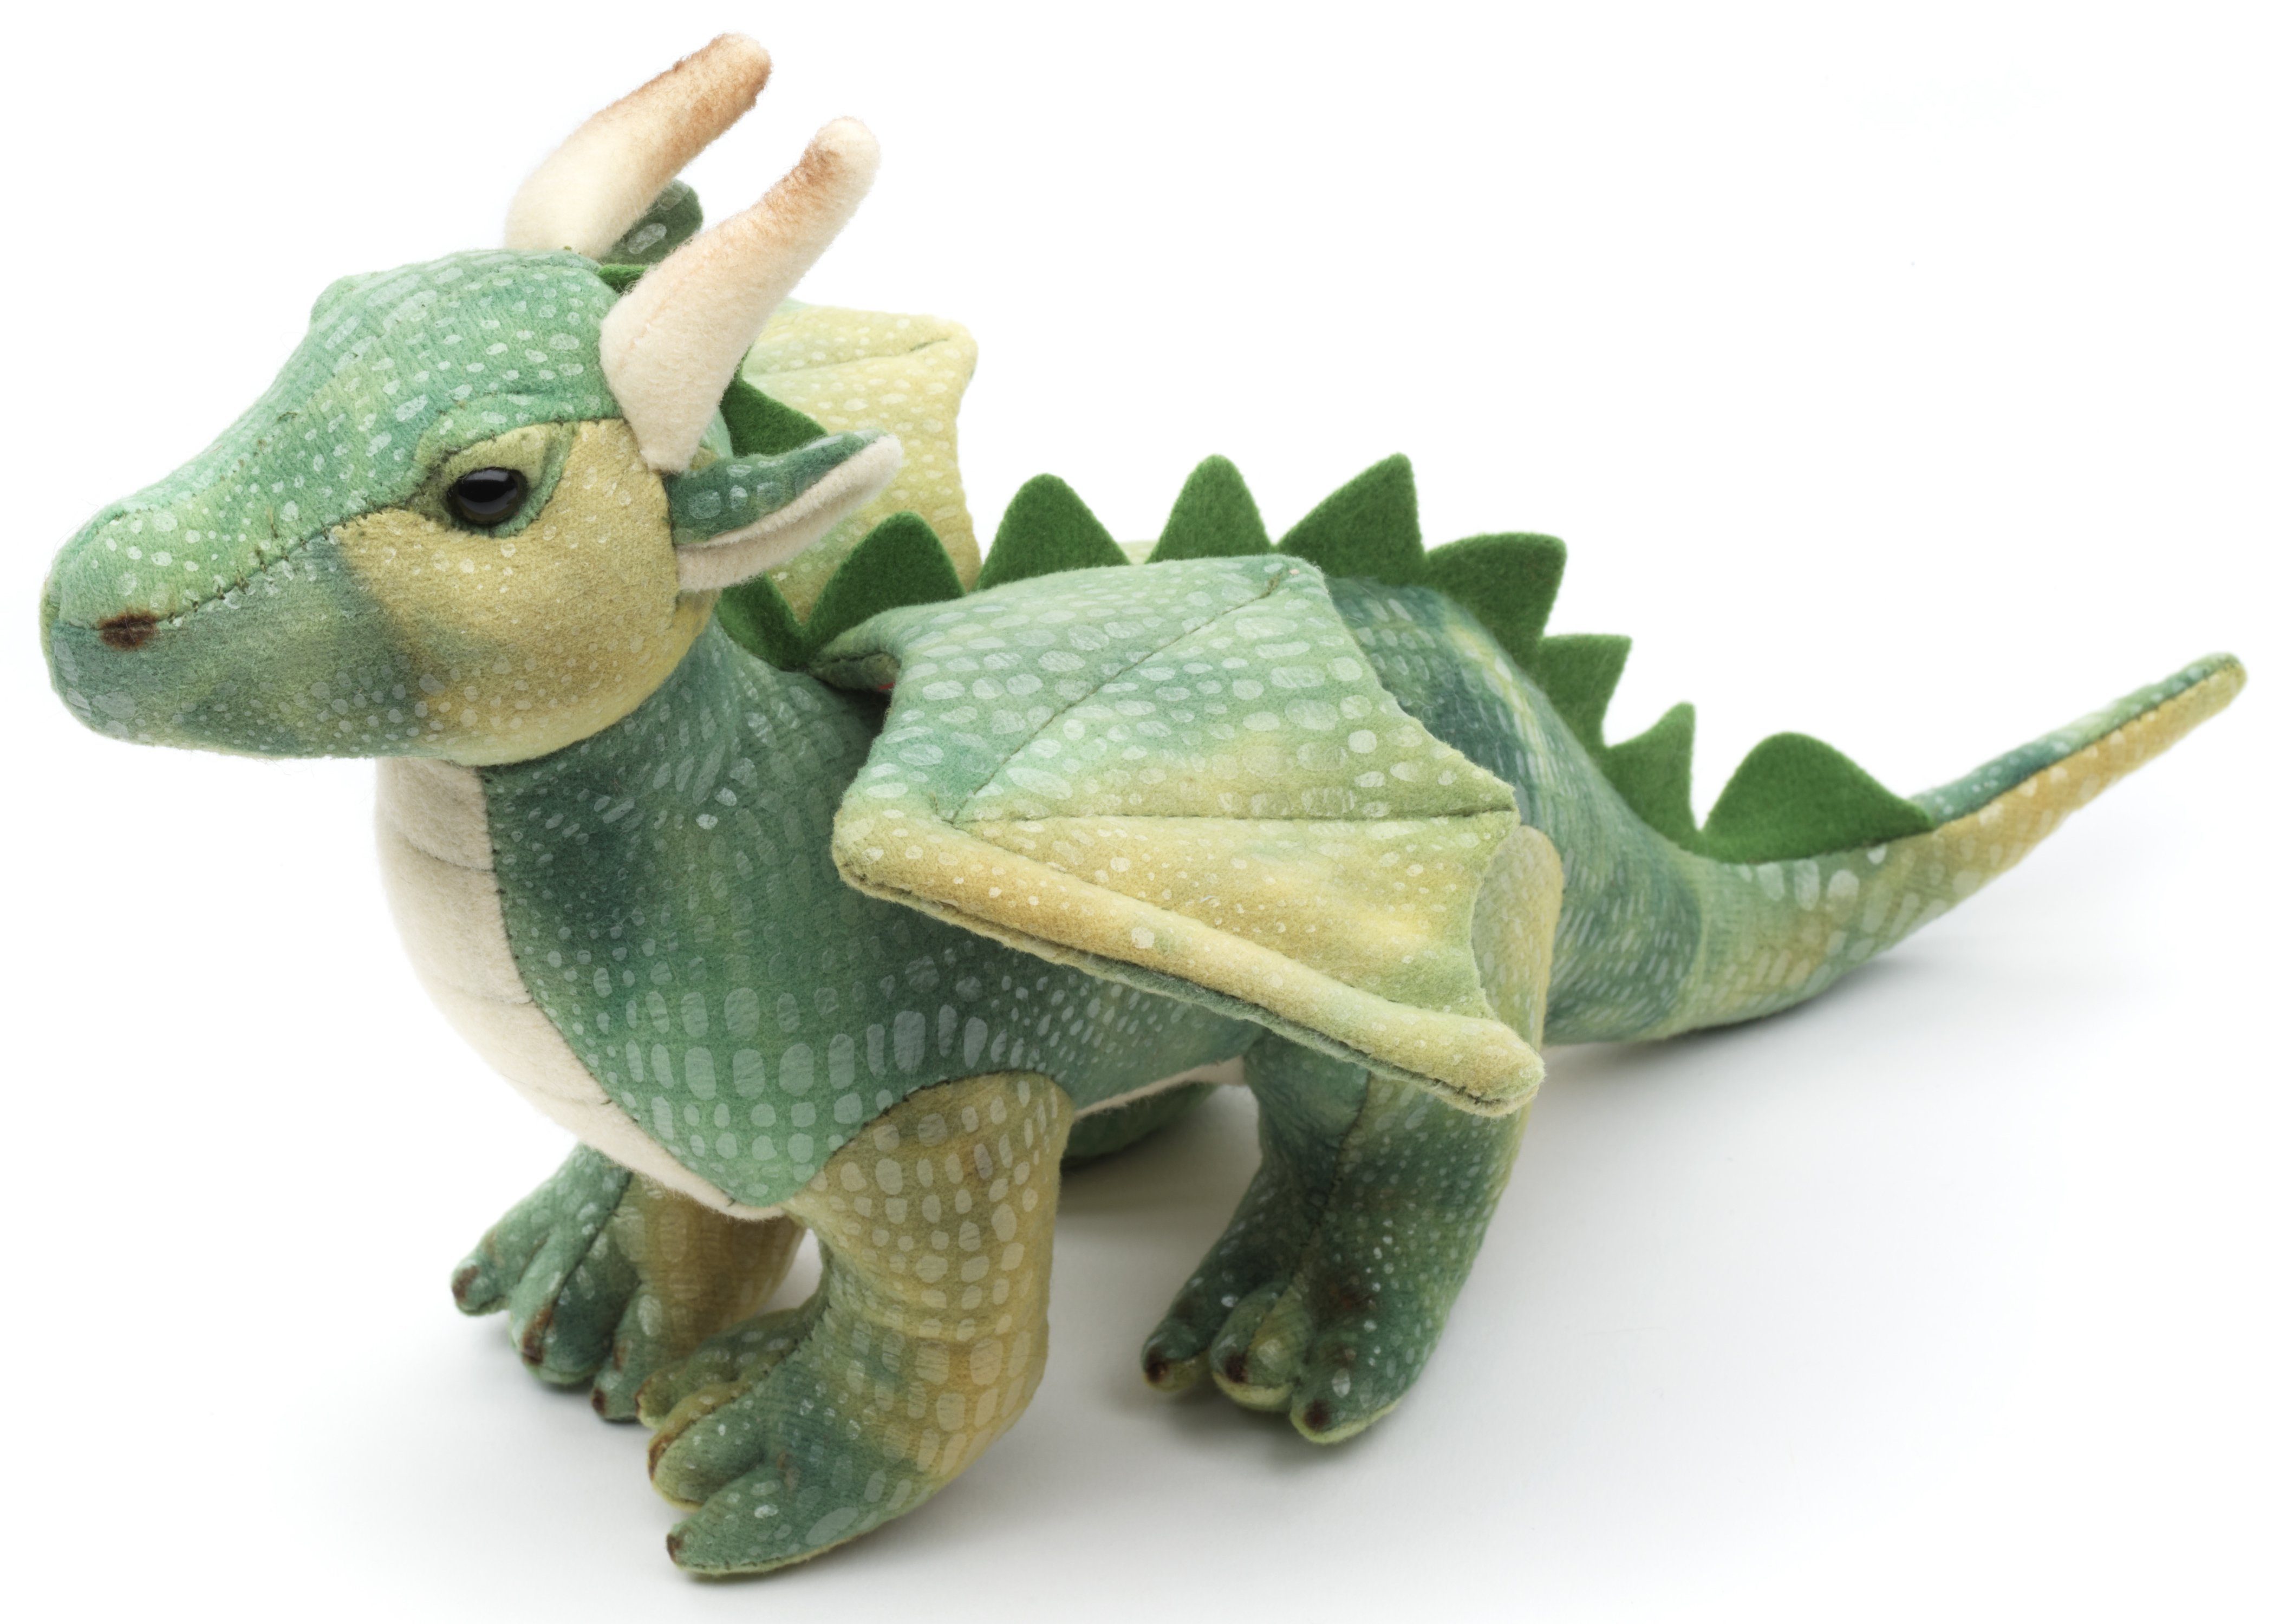 Uni-Toys Kuscheltier Drache - verschiedene Farben und Größen - Plüschtier, zu 100 % recyceltes Füllmaterial